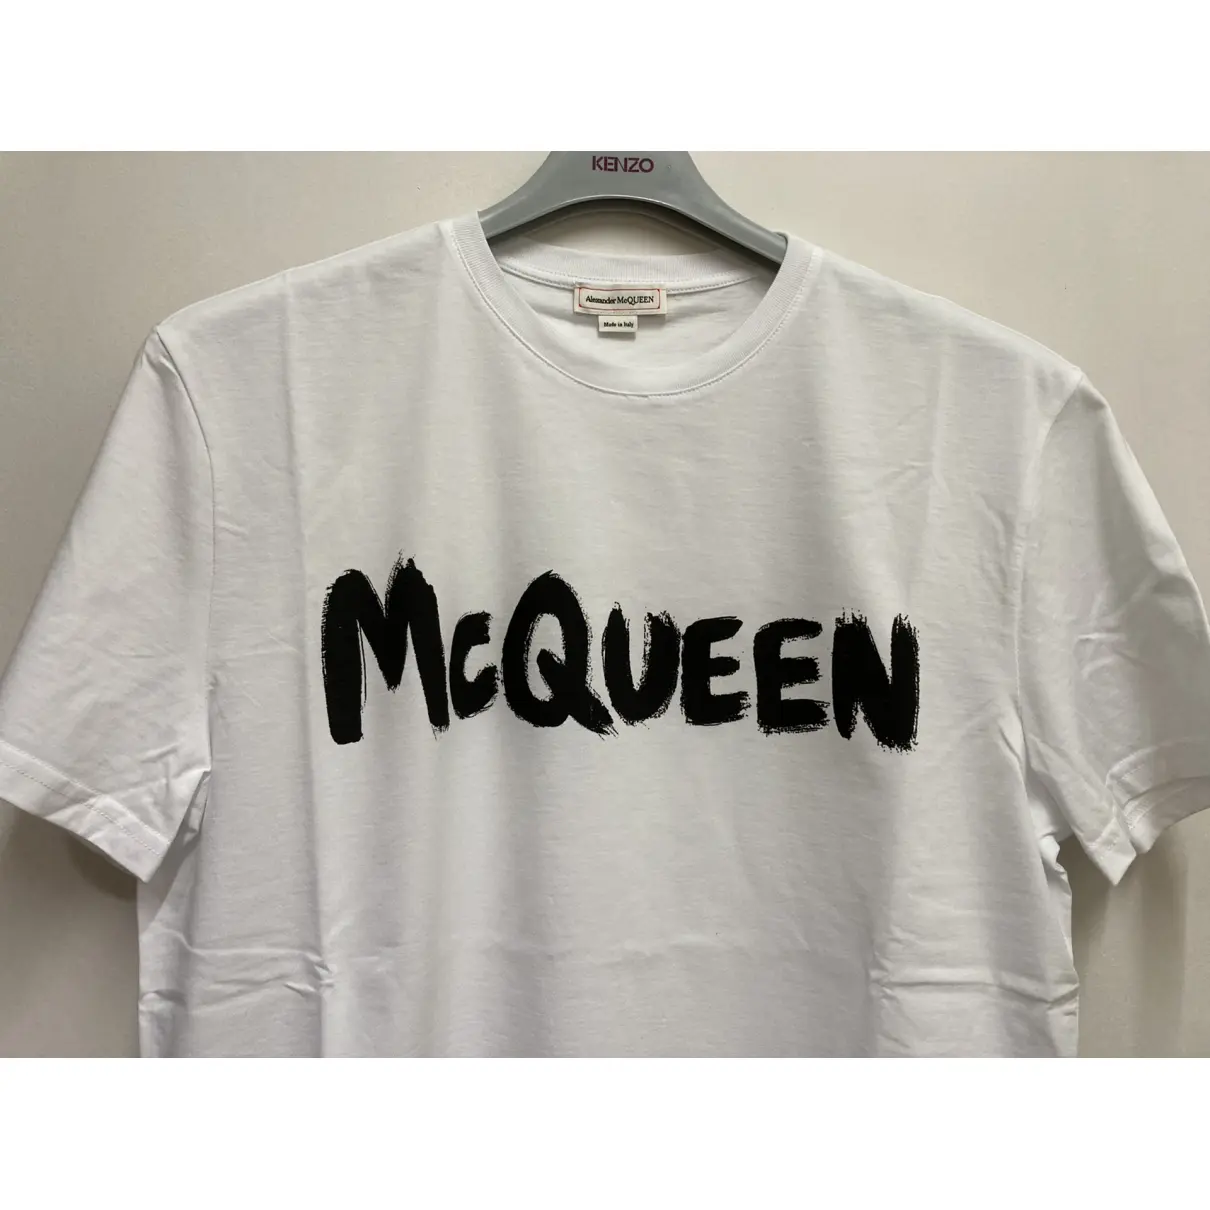 Buy Alexander McQueen T-shirt online